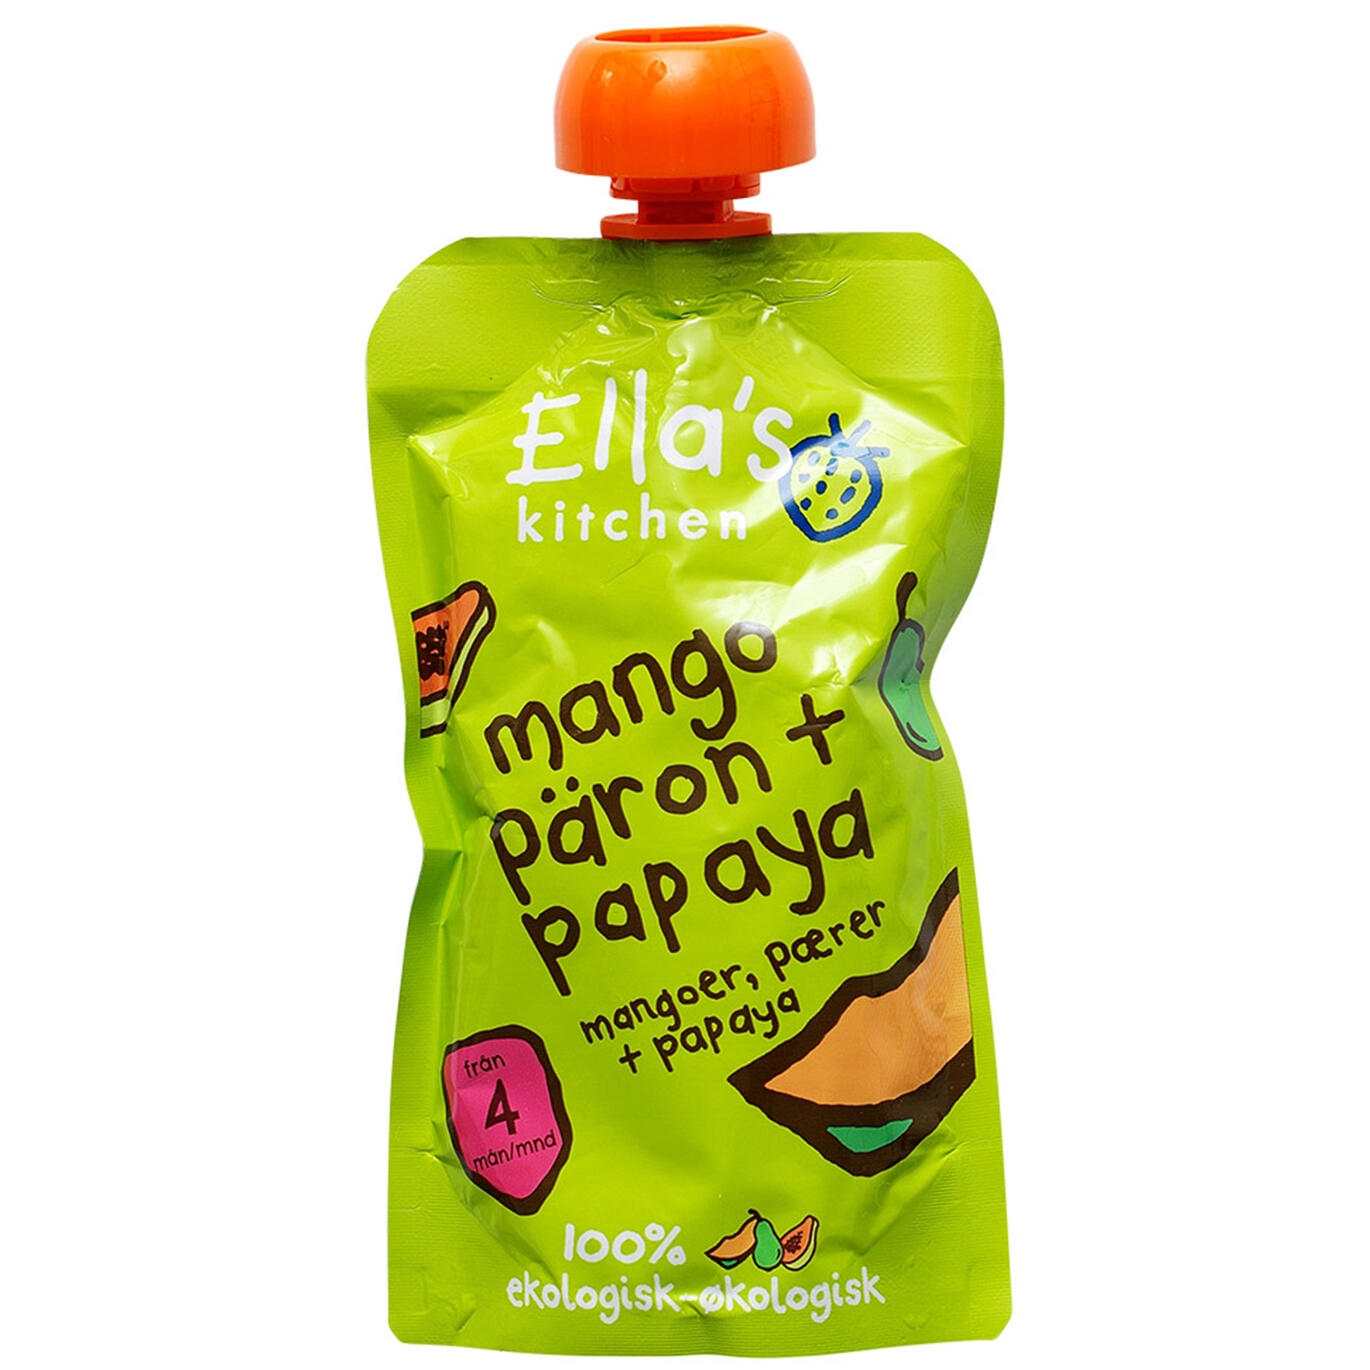 mangoes, pears + papayas Ella's kitchen